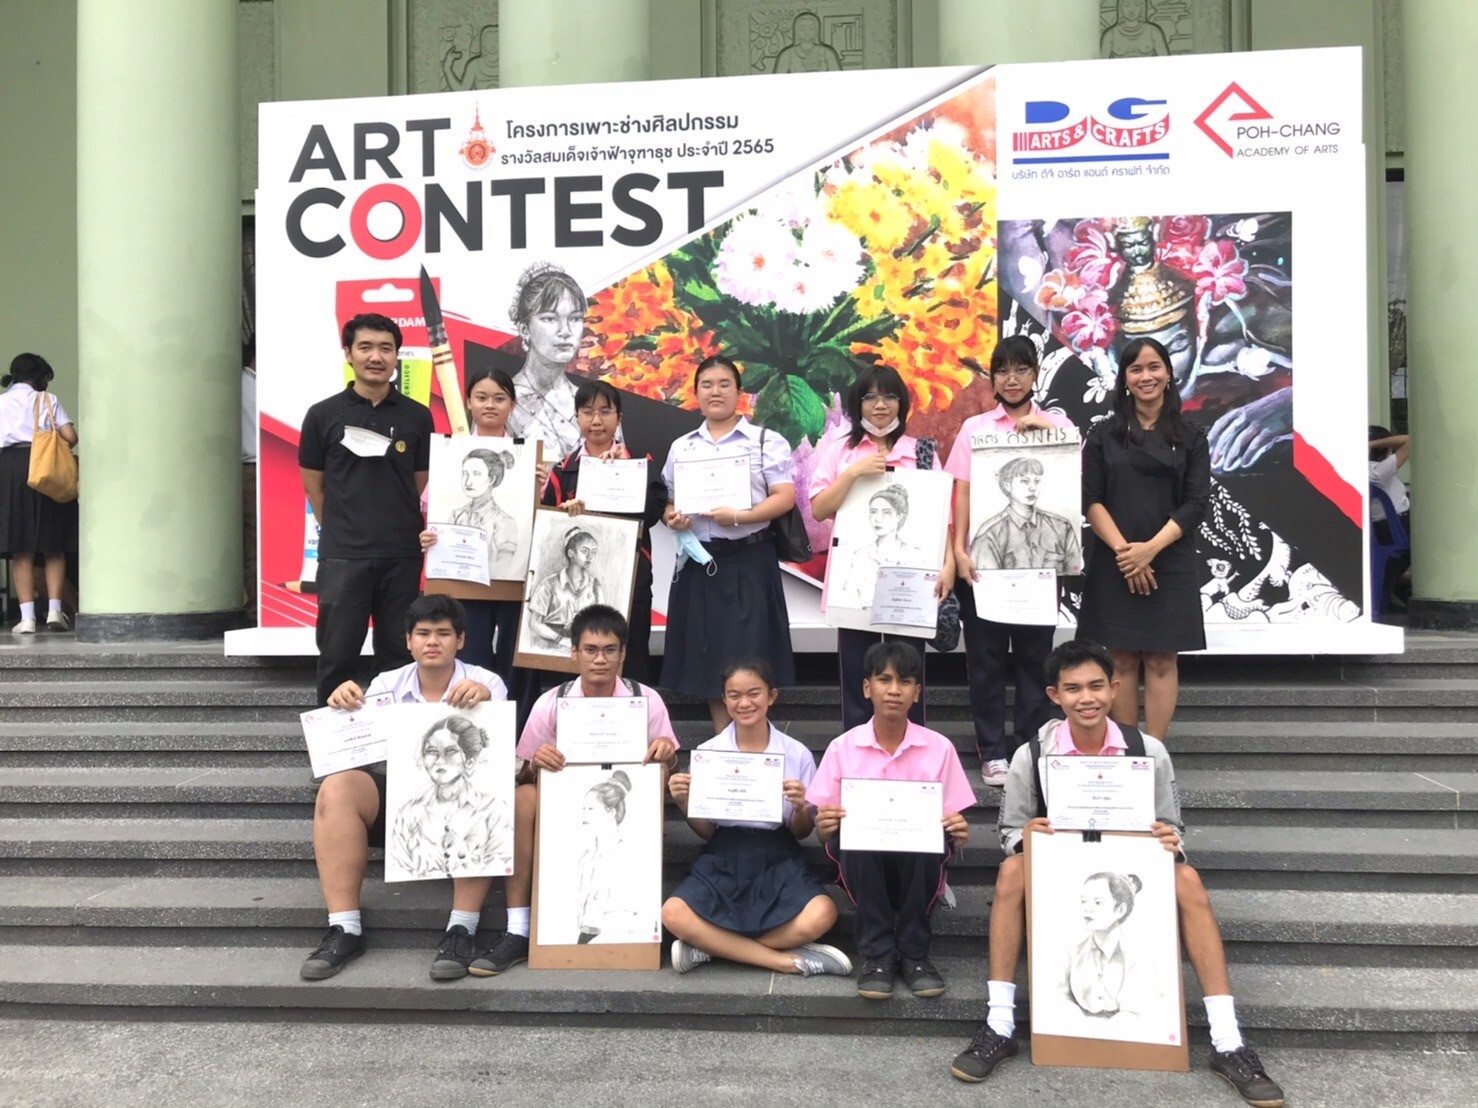 การแข่งขันวาดภาพระบายสี POH-CHANG ACADEMY OF ARTS Art Contest